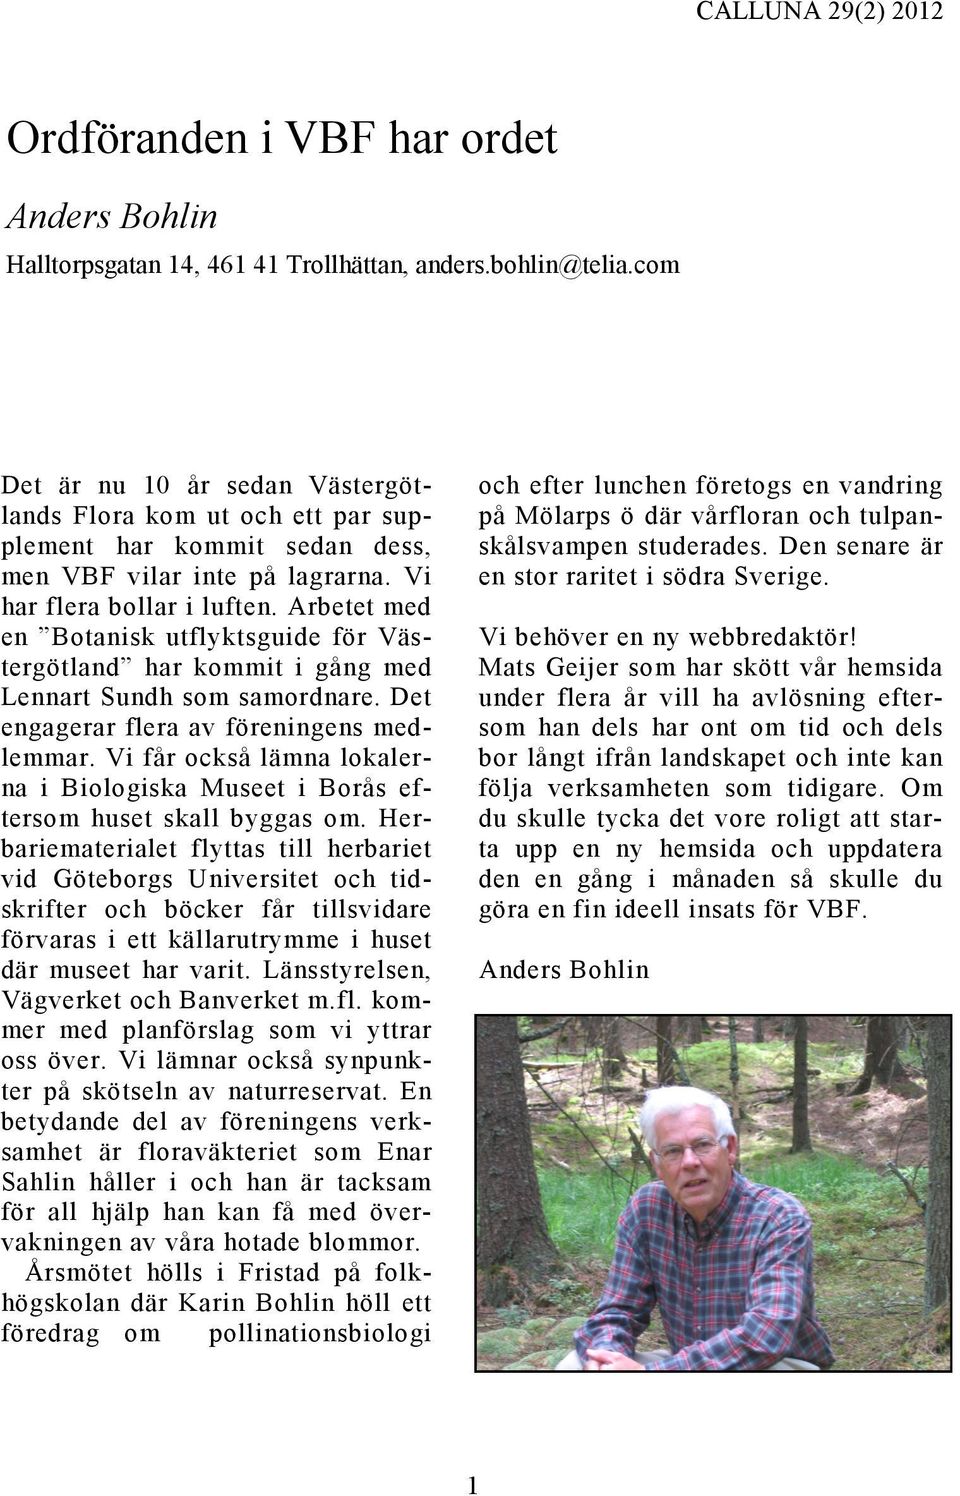 Arbetet med en Botanisk utflyktsguide för Västergötland har kommit i gång med Lennart Sundh som samordnare. Det engagerar flera av föreningens medlemmar.